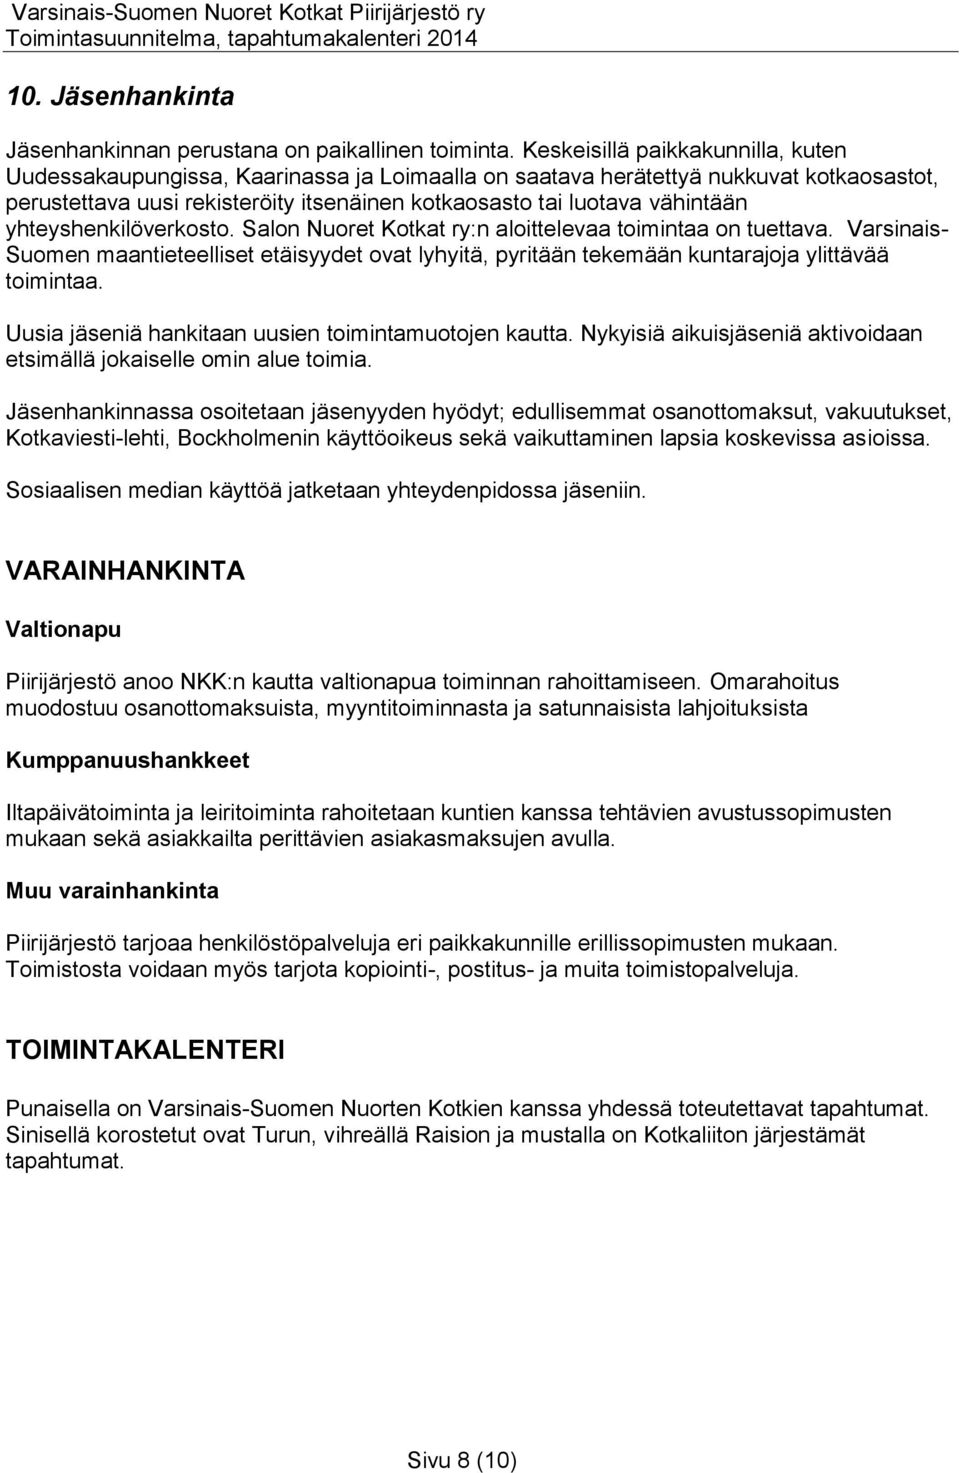 yhteyshenkilöverkosto. Salon Nuoret Kotkat ry:n aloittelevaa toimintaa on tuettava. Varsinais- Suomen maantieteelliset etäisyydet ovat lyhyitä, pyritään tekemään kuntarajoja ylittävää toimintaa.